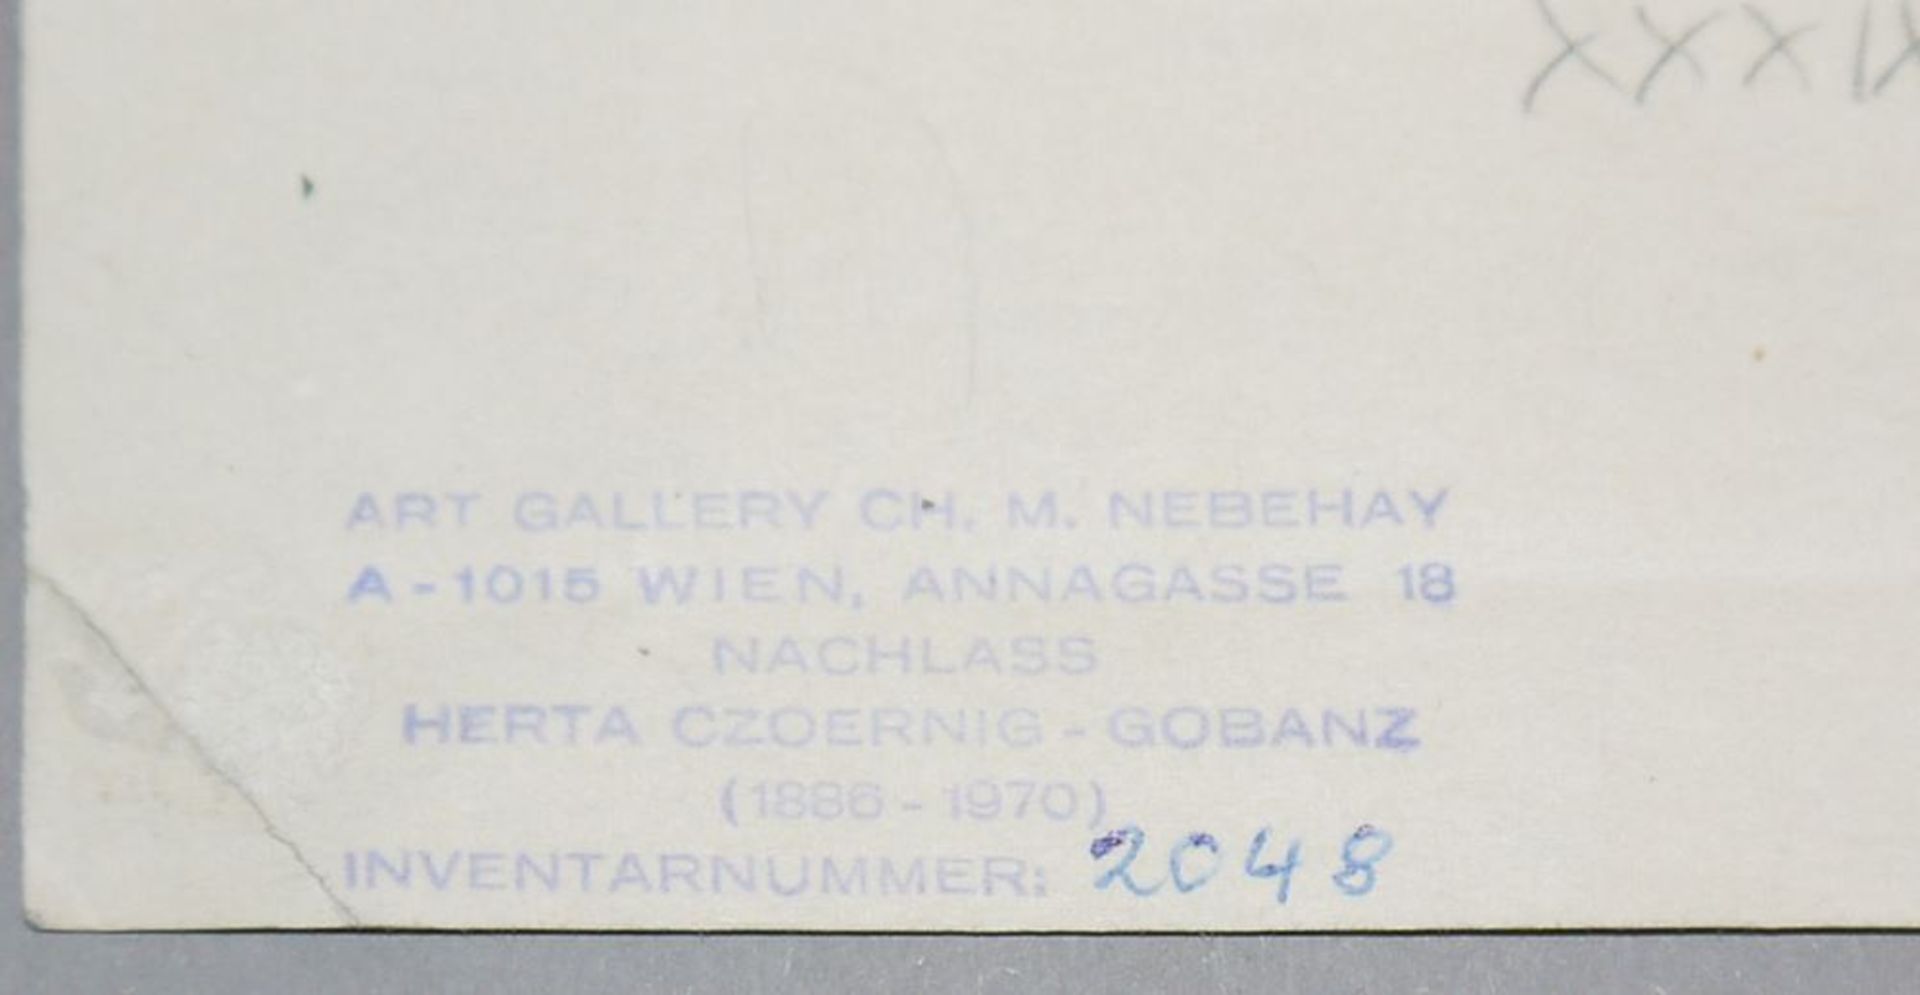 Herta Czoernig-Gobanz, Goethehaus in Weimar, signiertes Aquarell von 1931 - Bild 4 aus 4